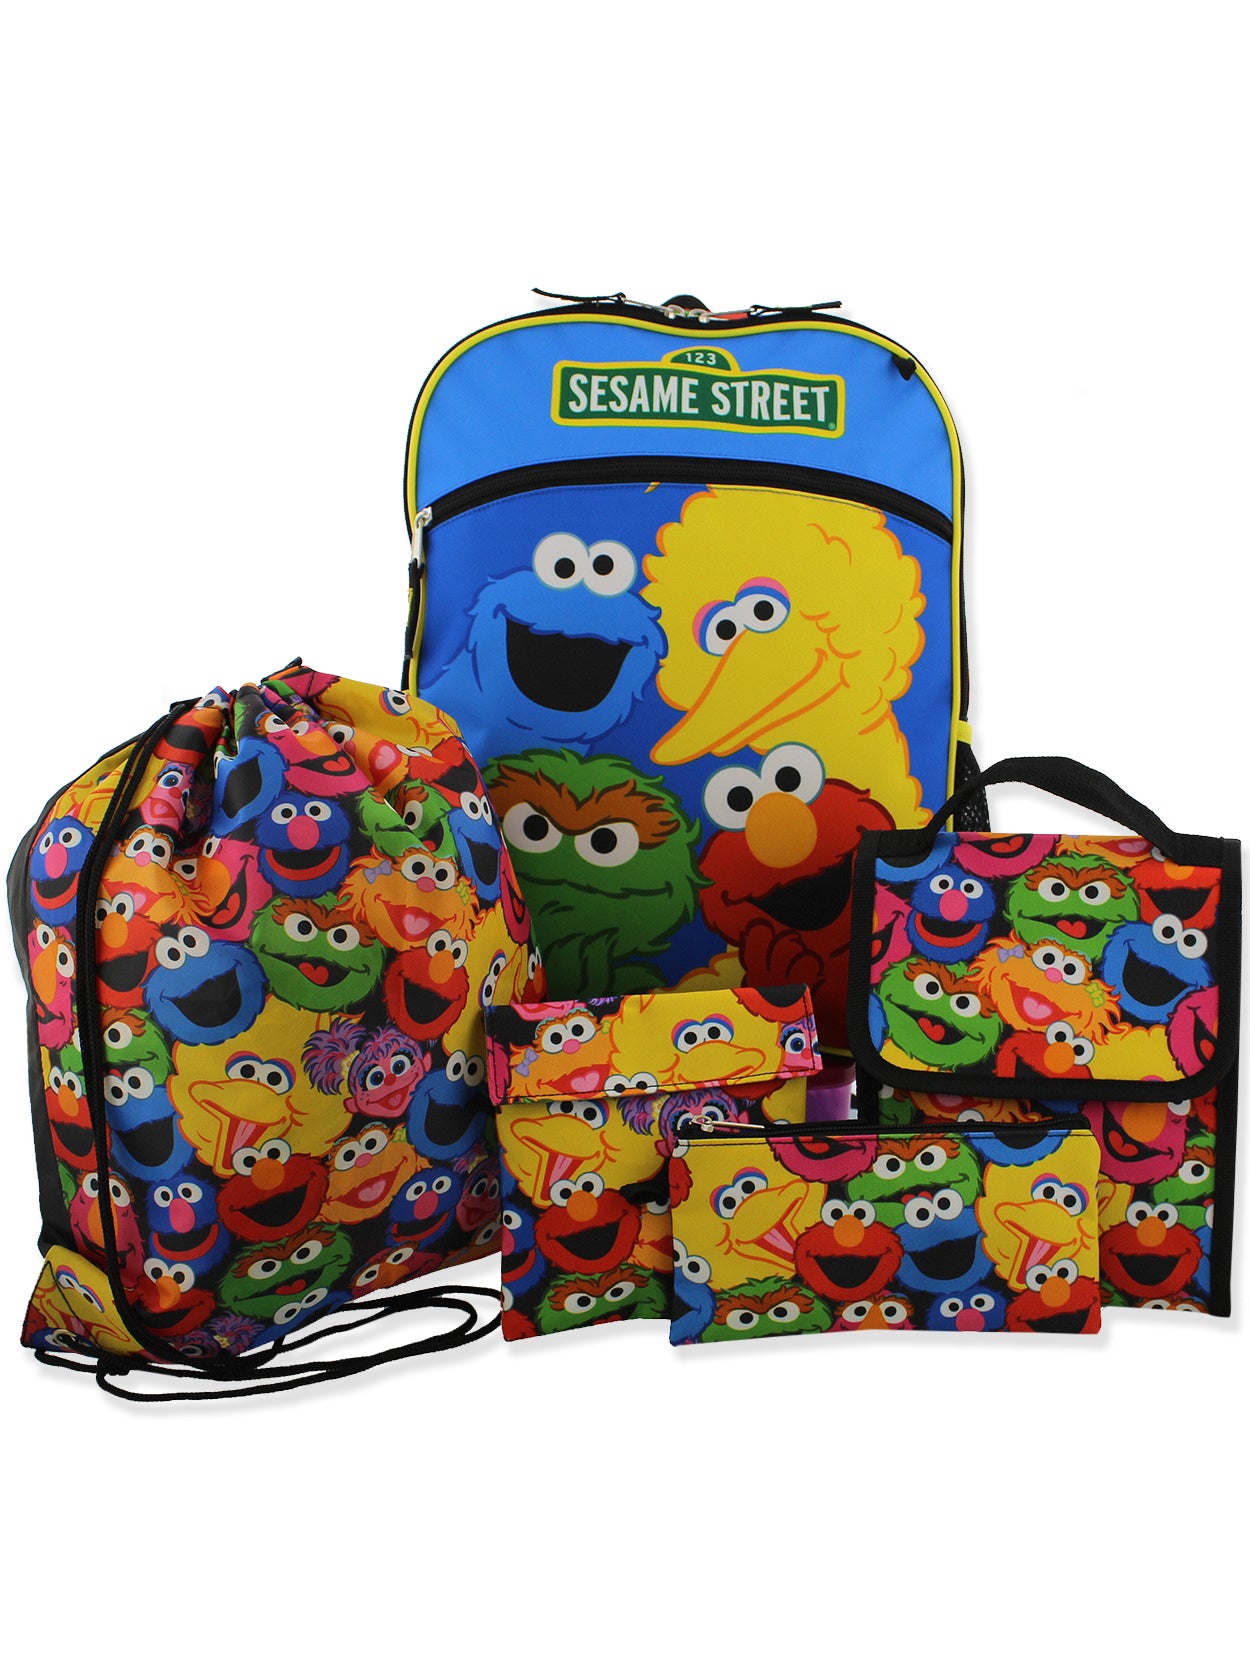 Sesame Street Gang Elmo Boys Girls Toddler 16 inch School Backpack